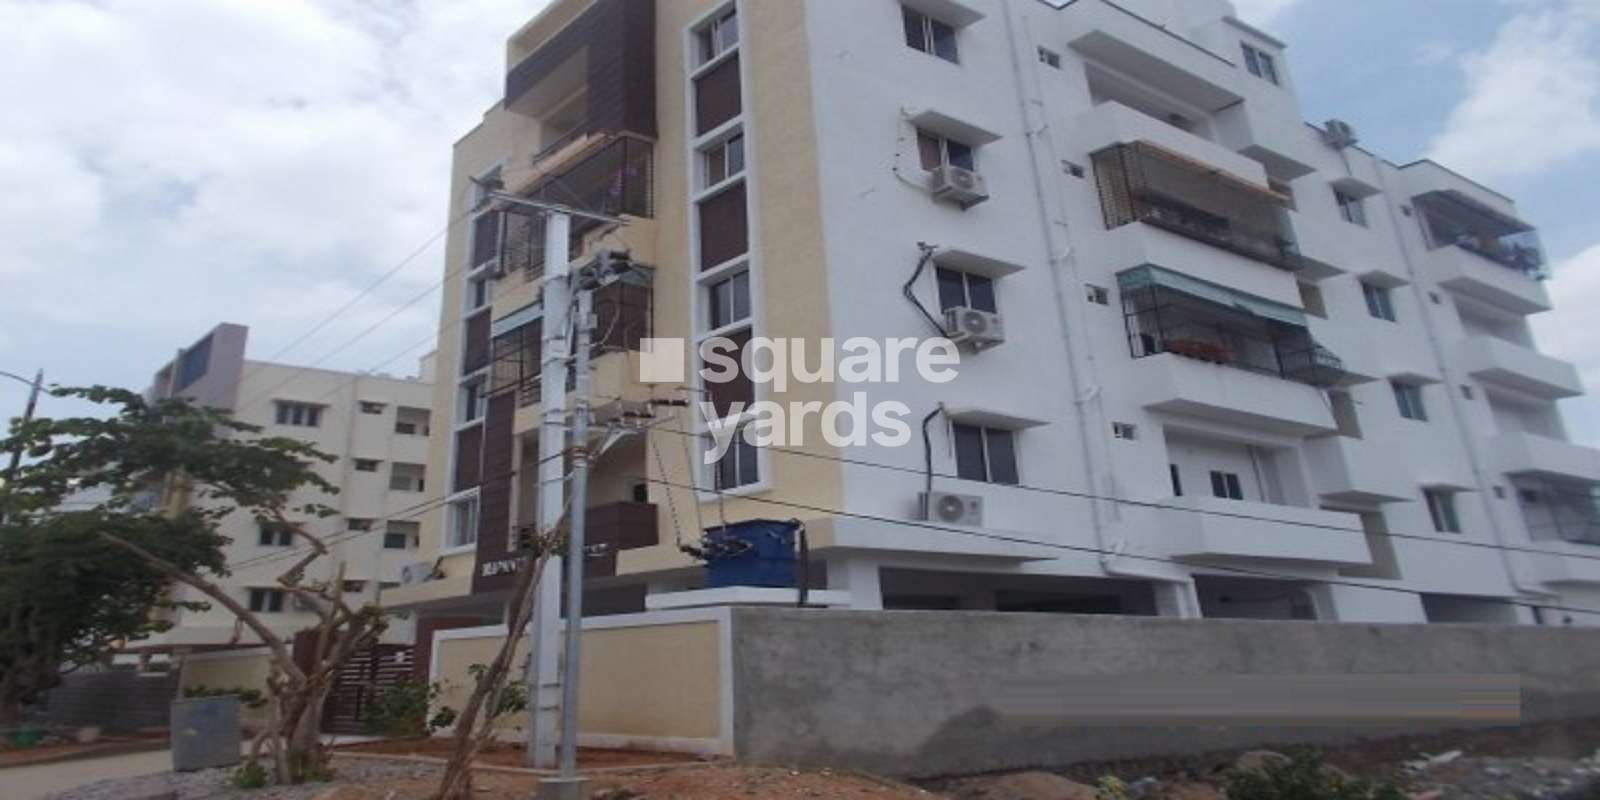 Dhathri Madaneez Apartment Cover Image